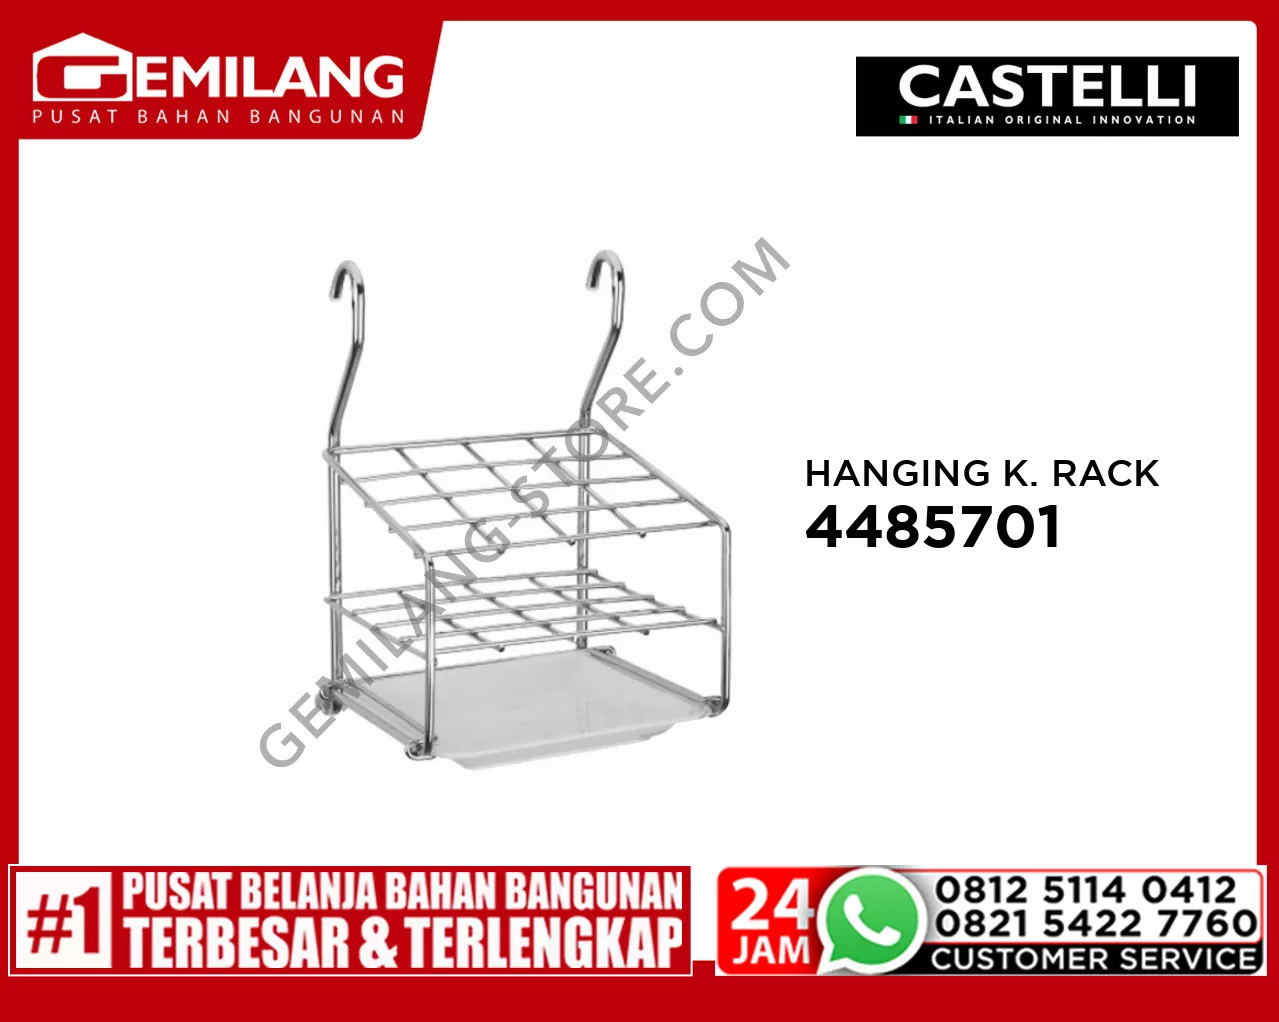 CASTELLI HANGING KITCHEN EQUIPMENT RACK 4485701